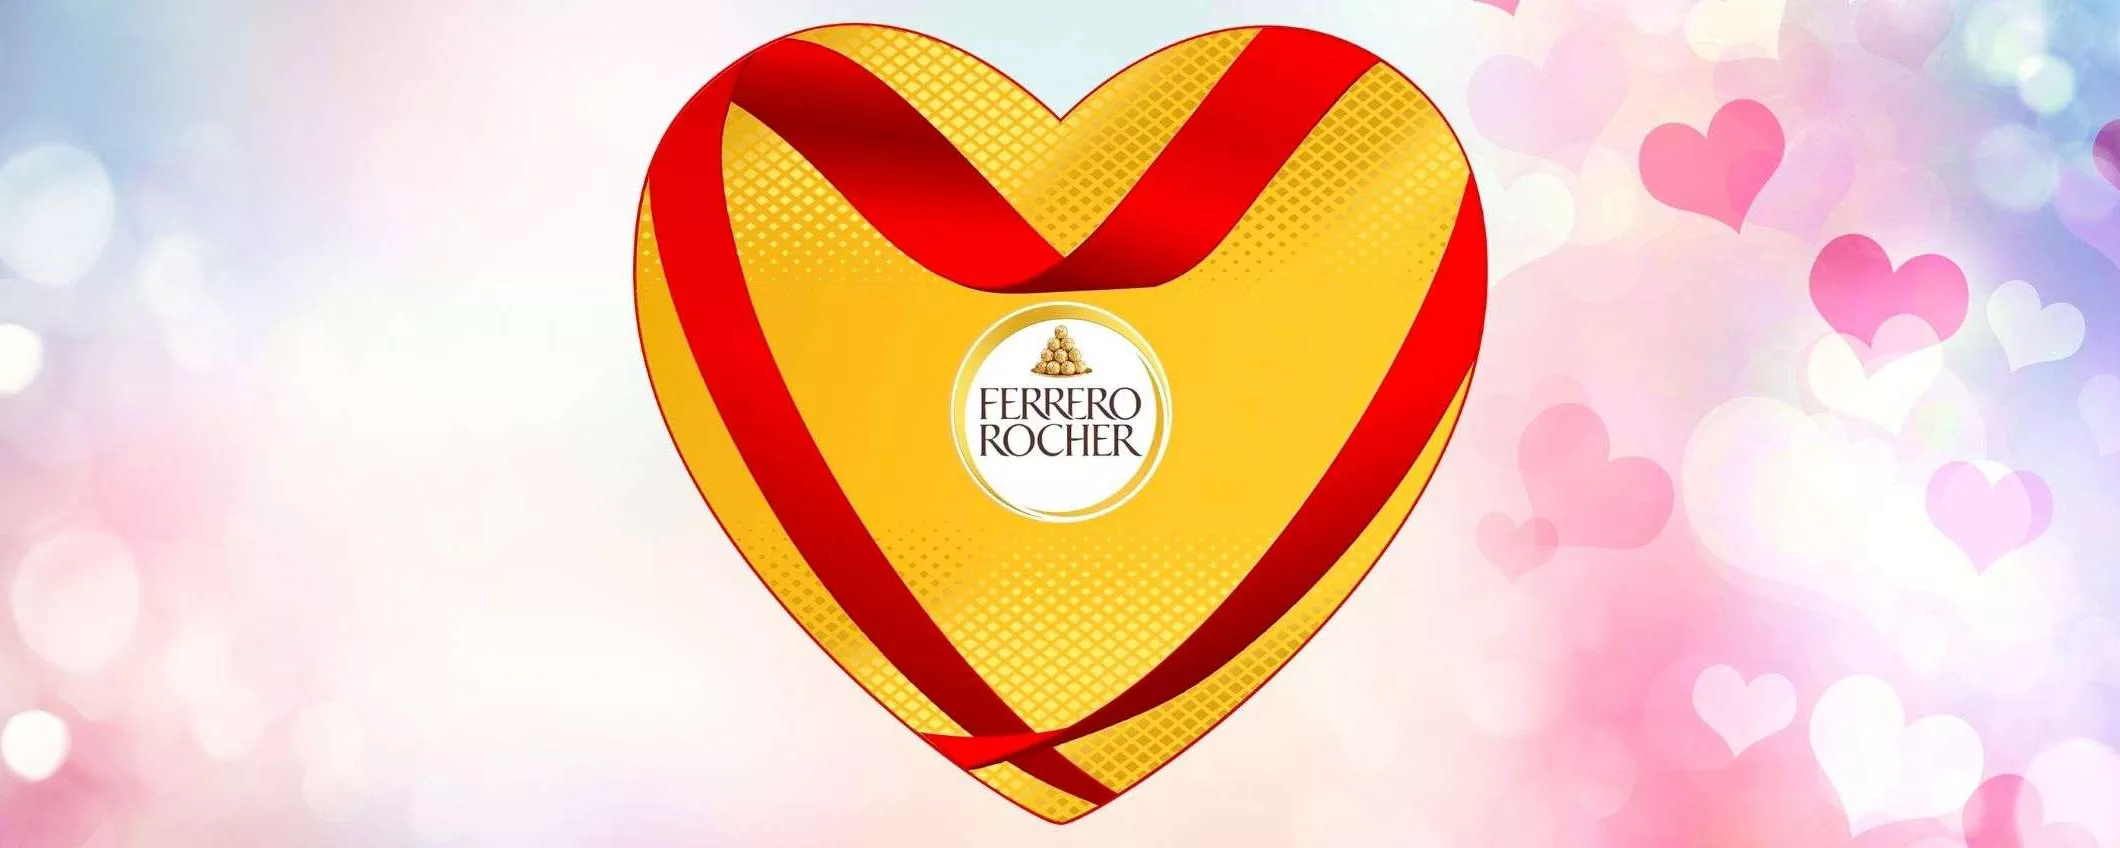 Scatola cioccolatini Ferrero Rocher per San Valentino in OFFERTA su Amazon